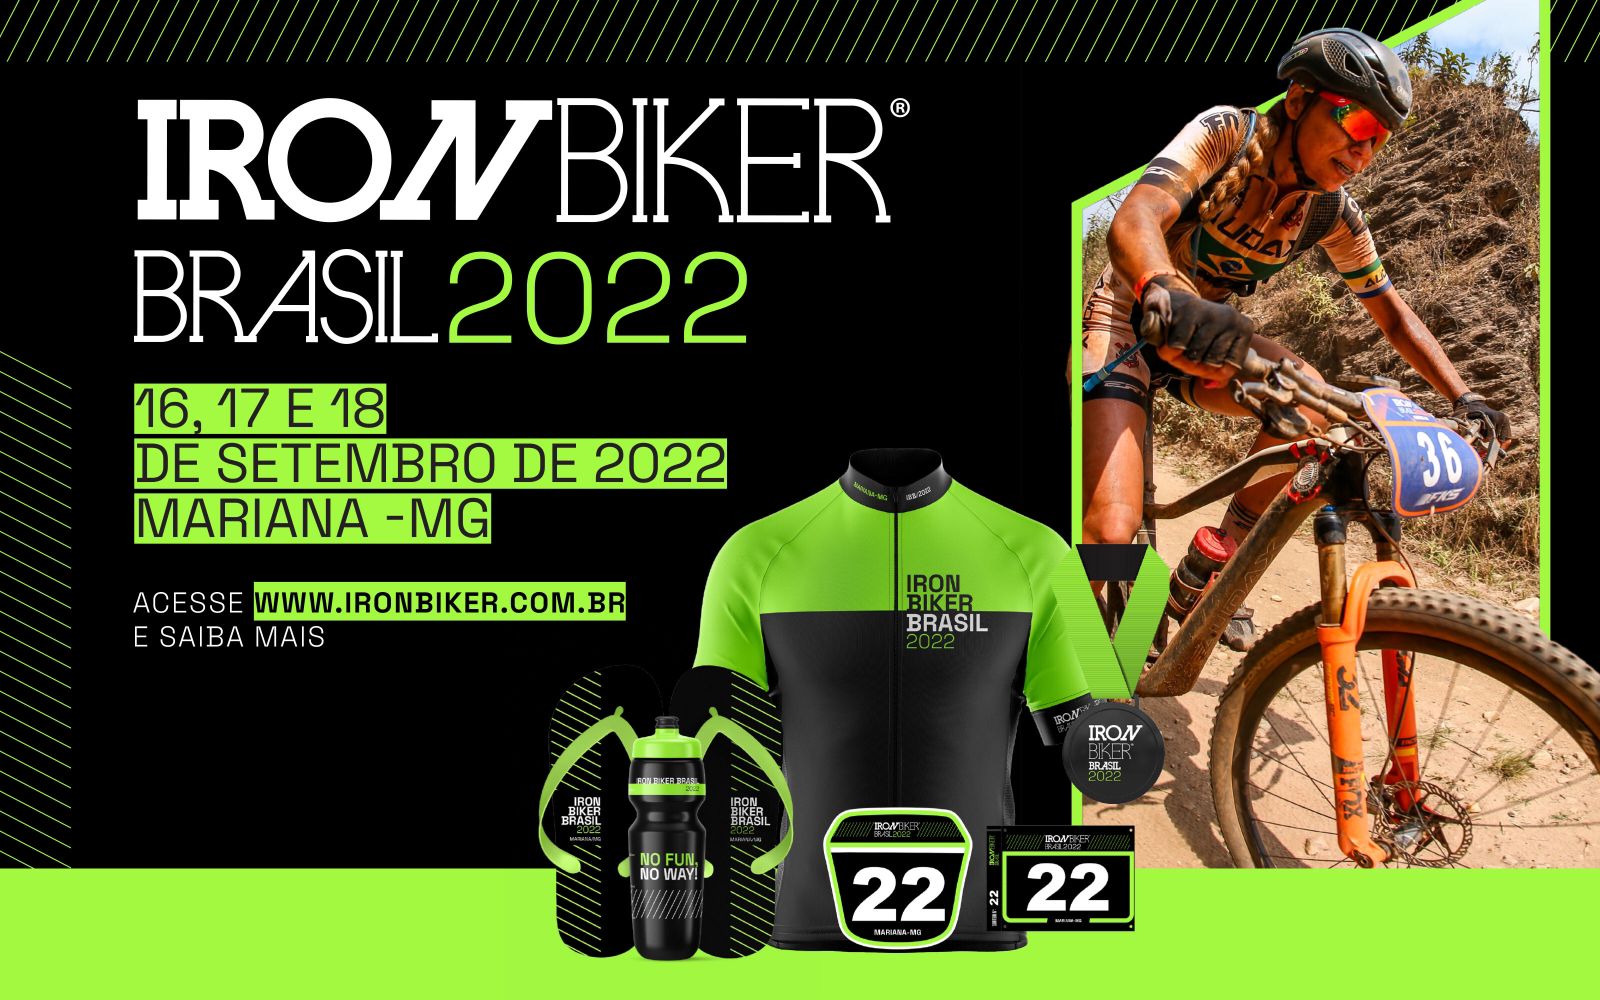 Iron Biker Brasil 2022 já tem data marcada!